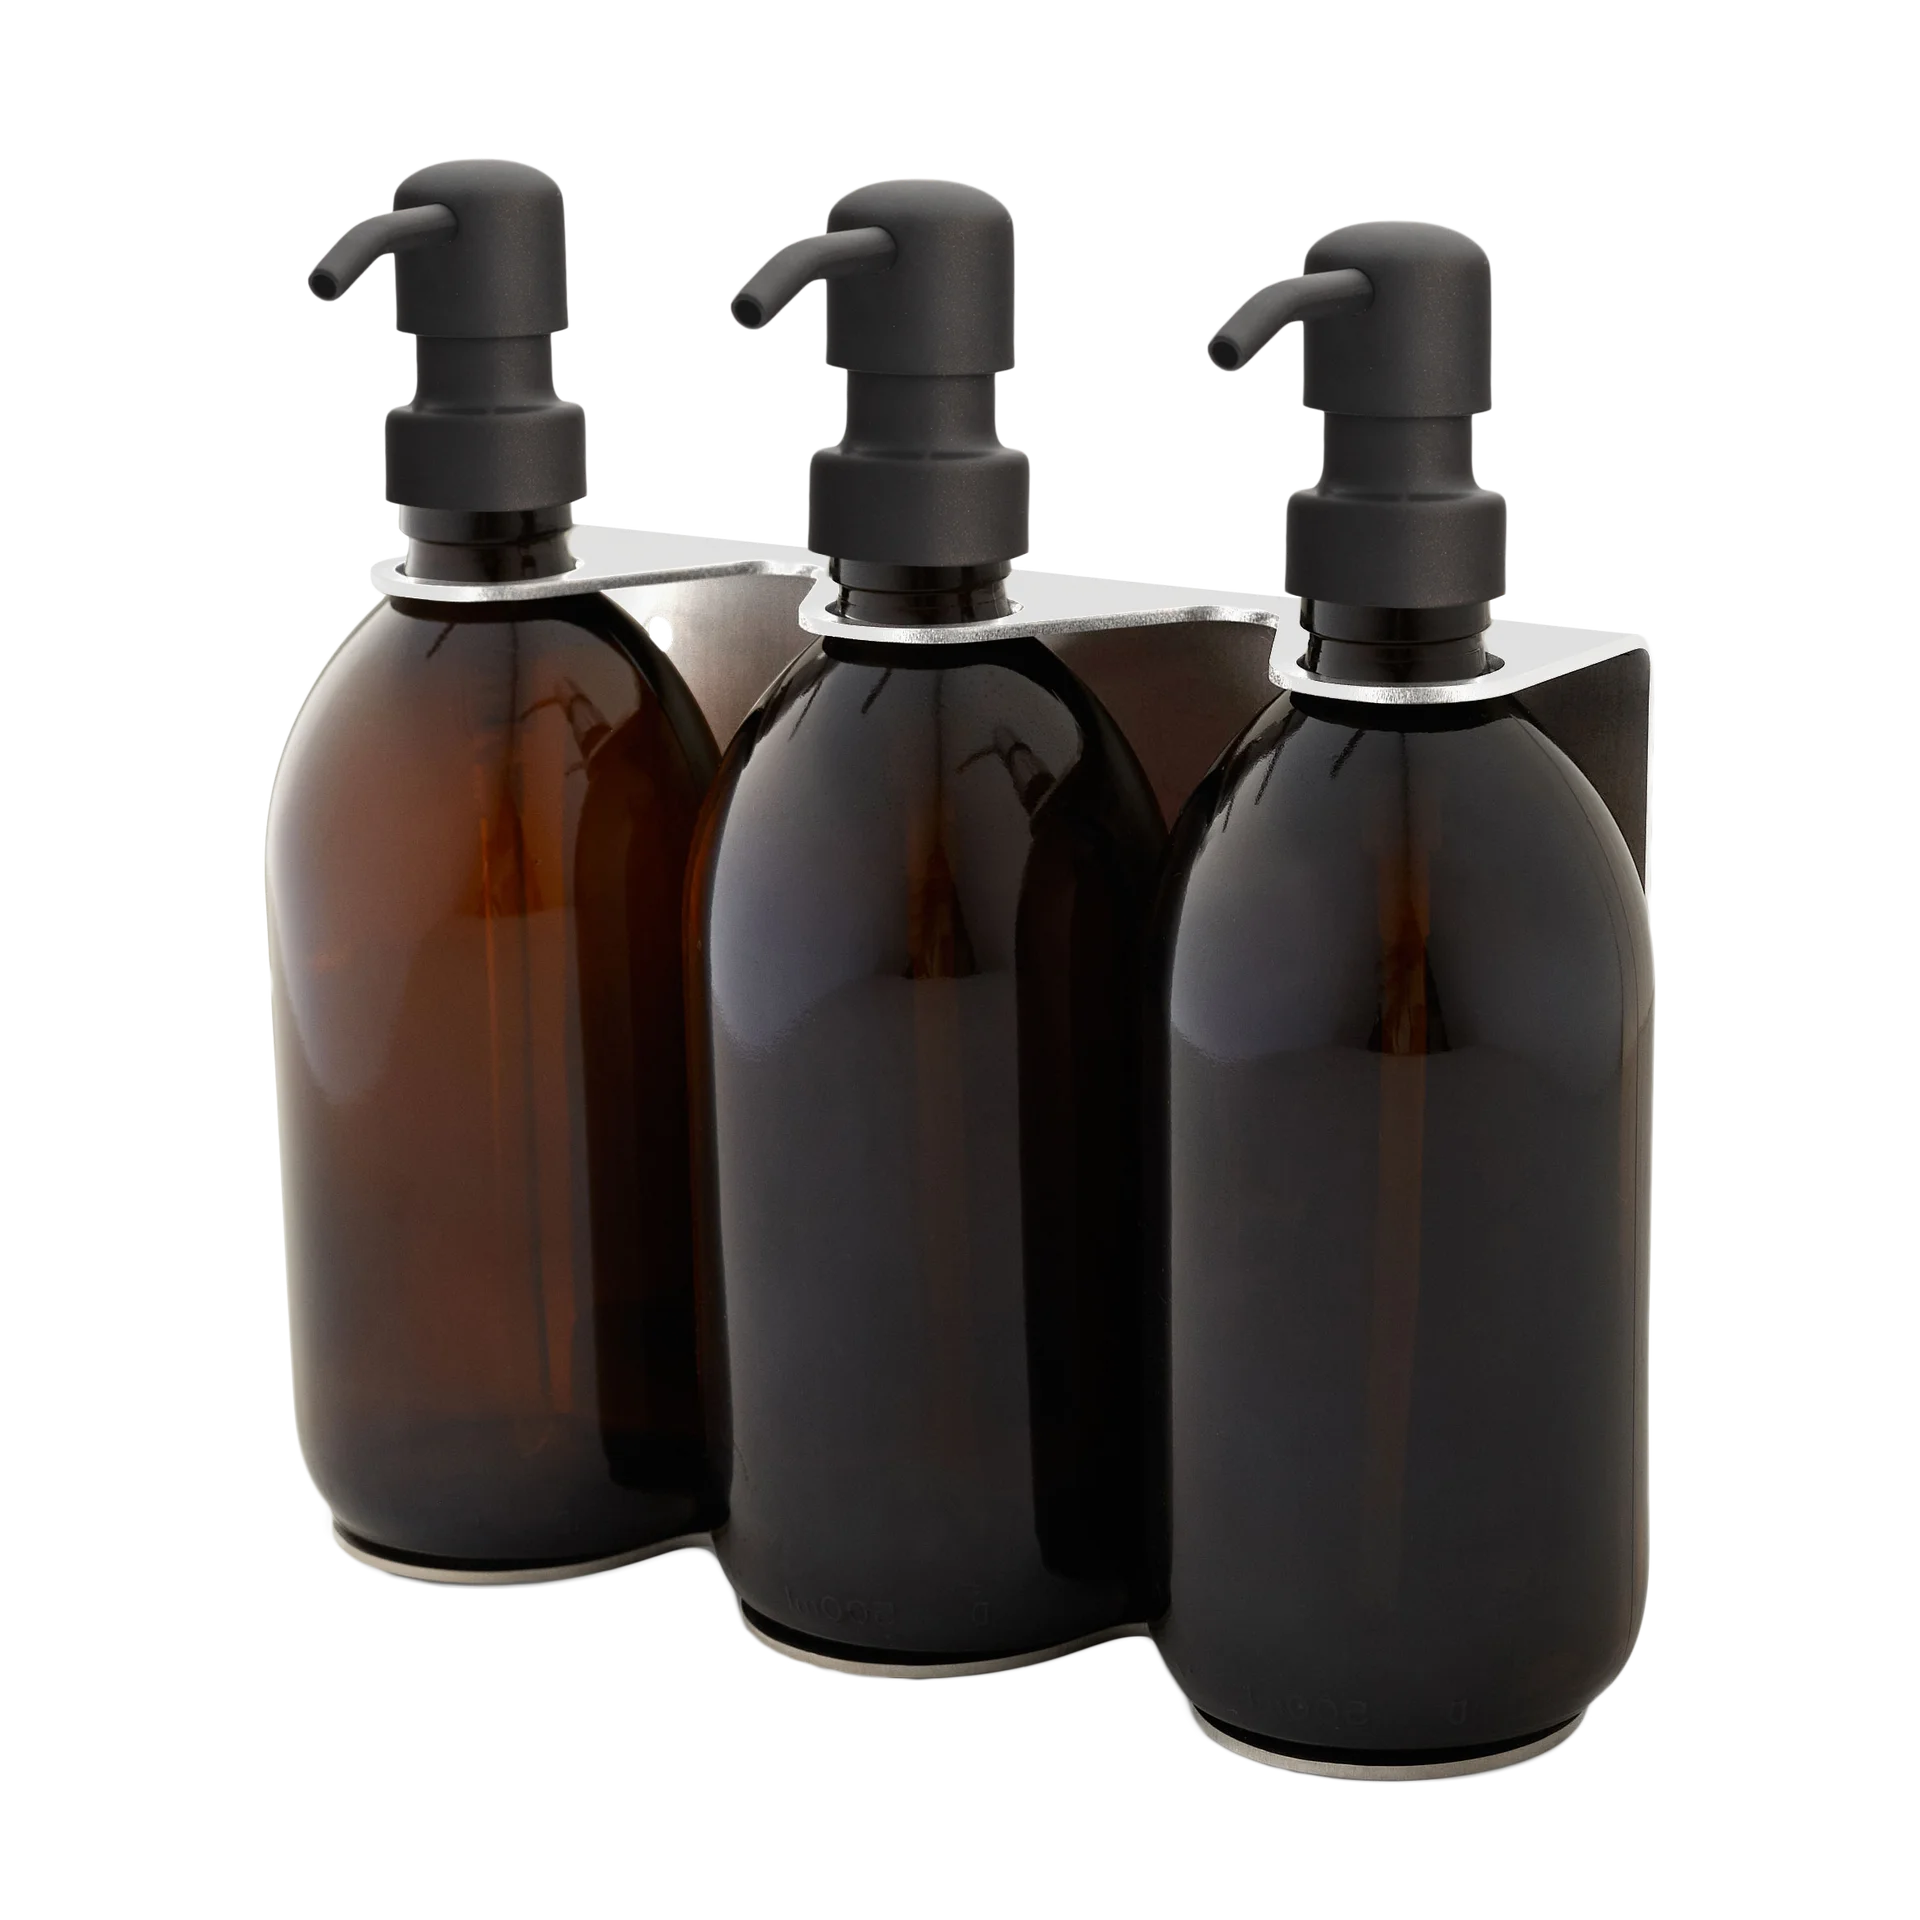 Wandmontierter dreifacher Seifenspender aus Chrom, bernsteinfarbene Flaschen mit 250 ml und schwarze Pumpe